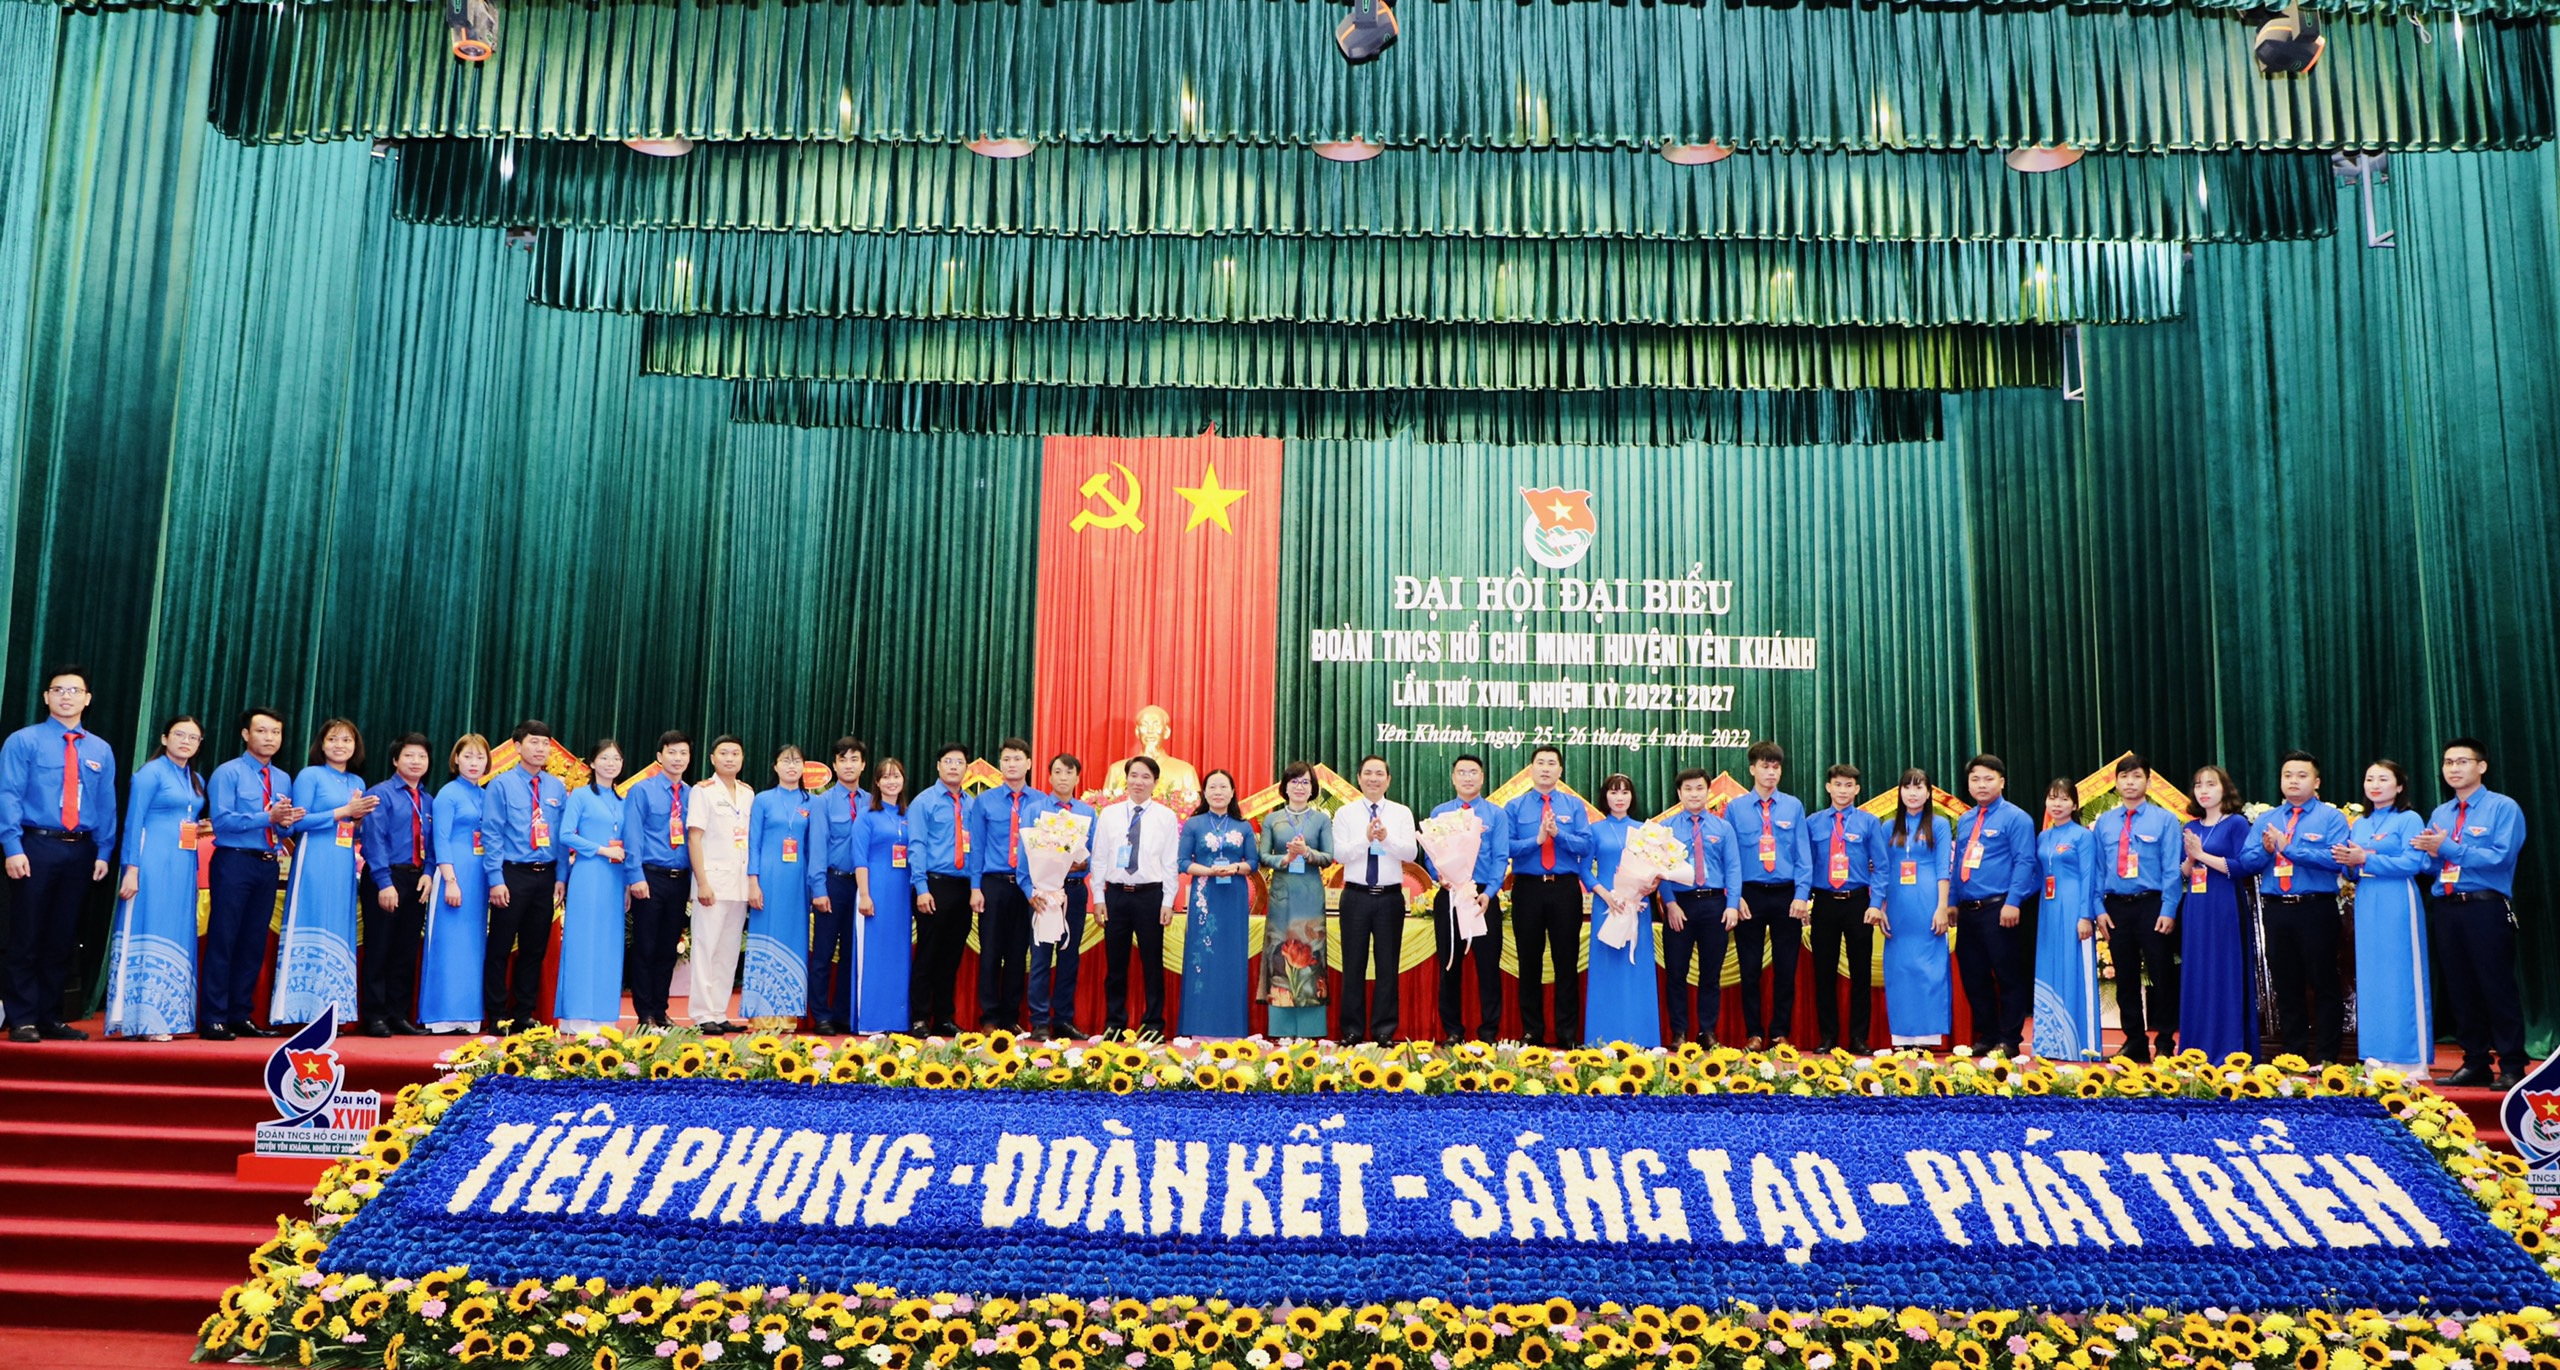 Mang đặc sản quê hương đến Đại hội điểm cấp huyện tại Ninh Bình